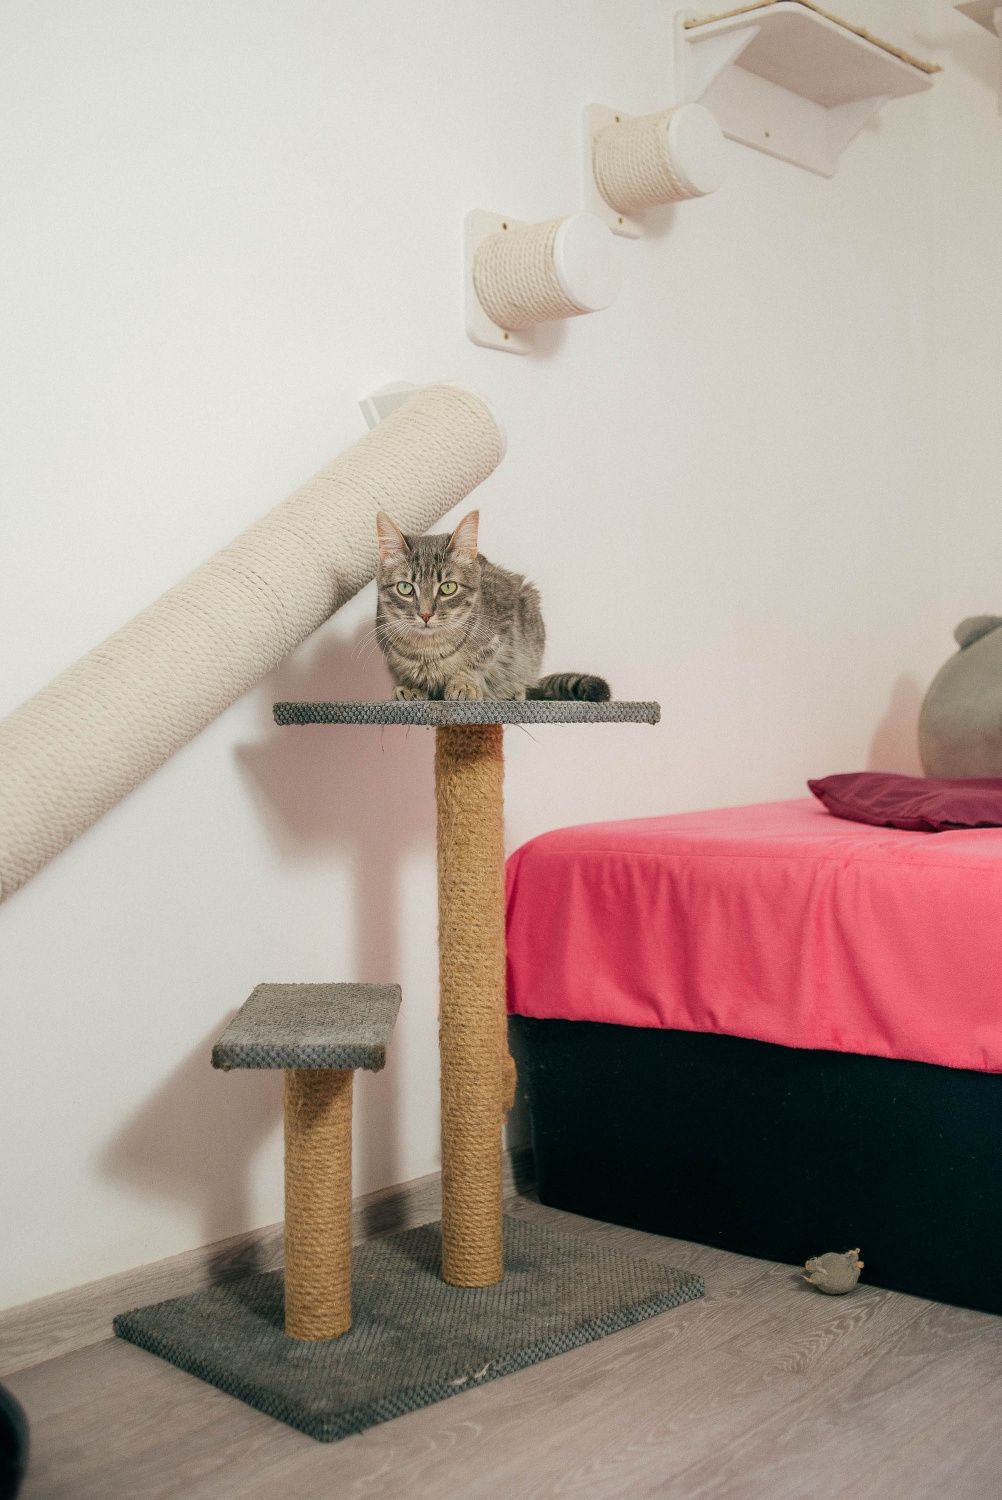 Юстас - котенок дымчатого окраса в добрые руки